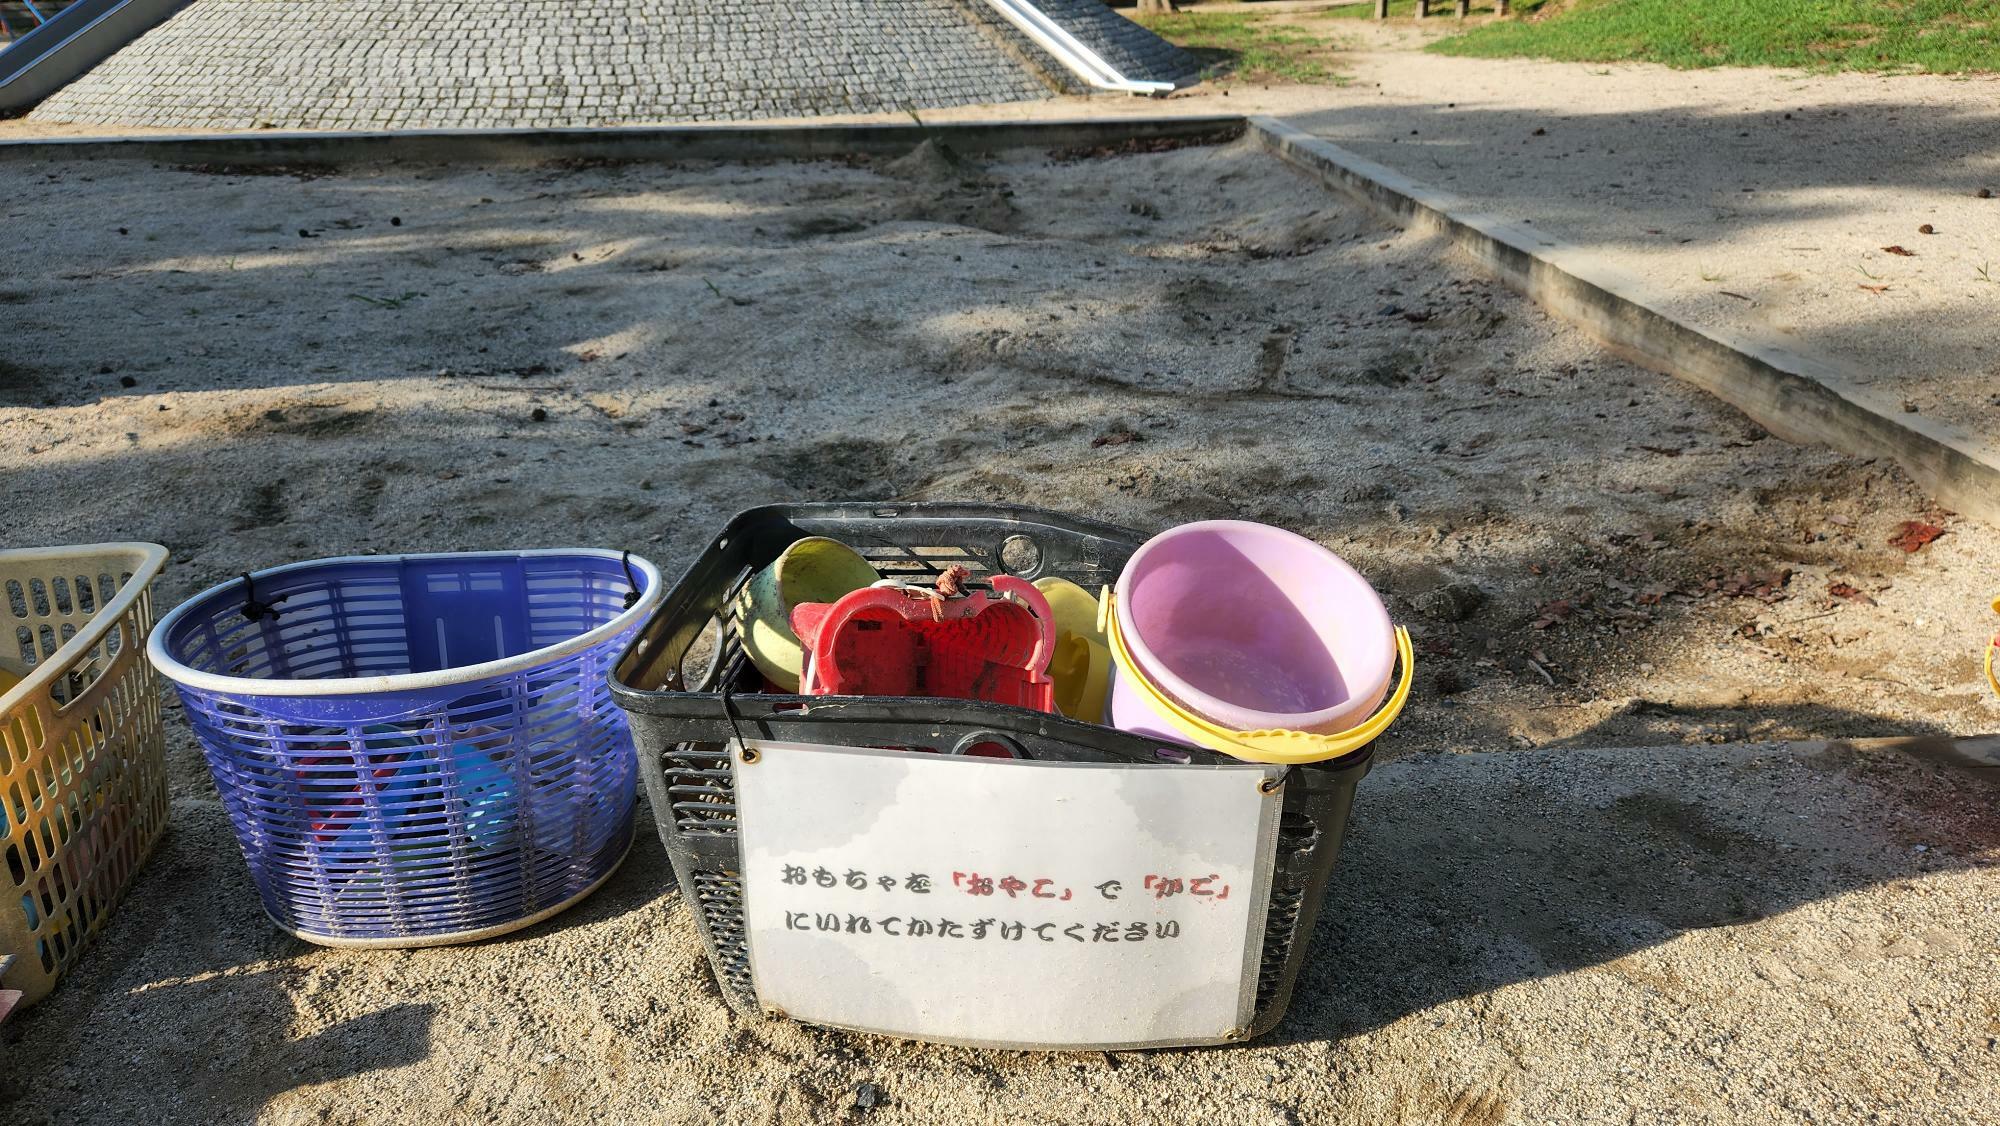 砂場で遊ぶためのバケツやスコップの道具の貸し出しがされていました。